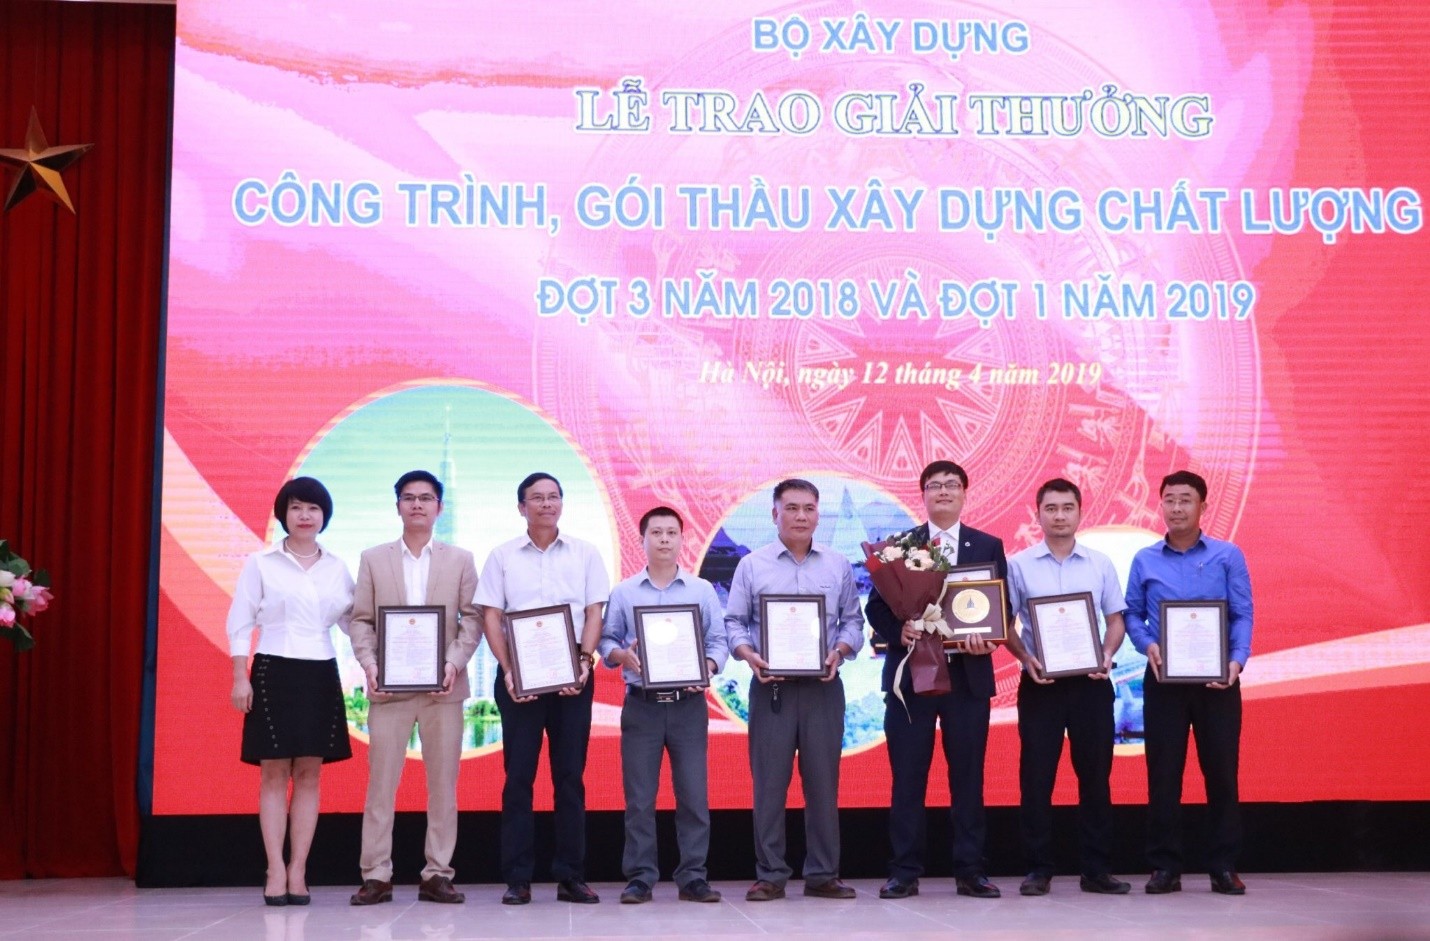 Rivera Park Hà Nội đoạt giải thưởng Công trình xây dựng chất lượng cao của Bộ Xây dựng